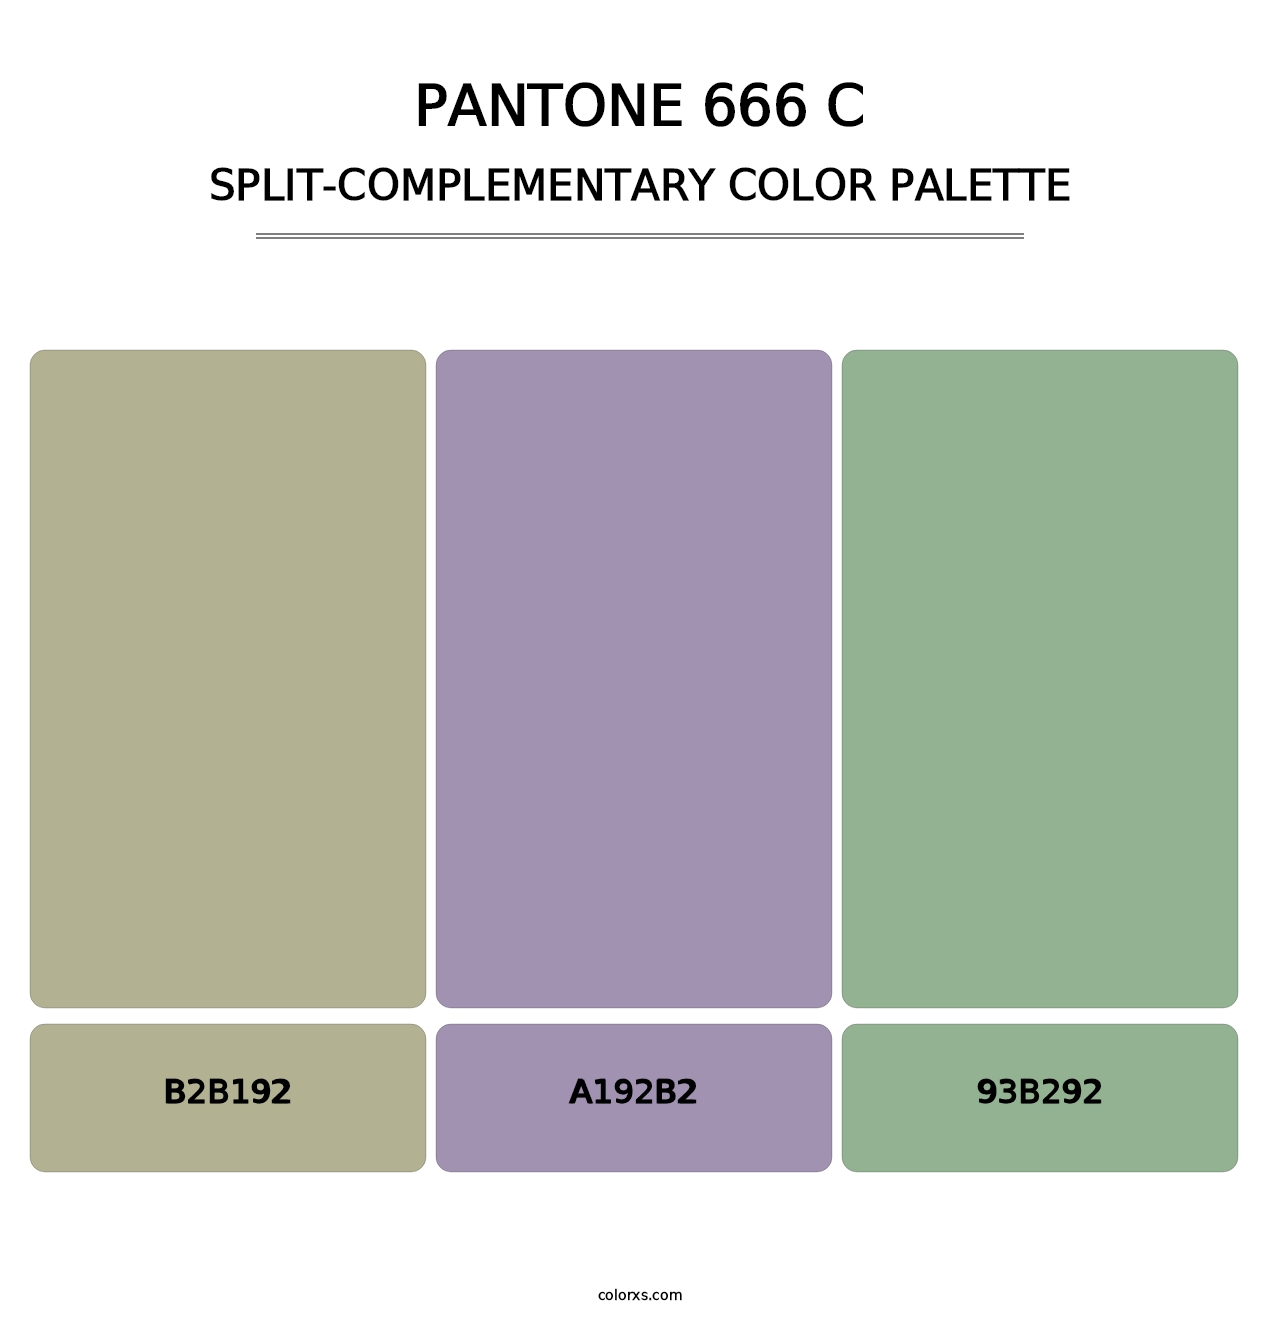 PANTONE 666 C - Split-Complementary Color Palette